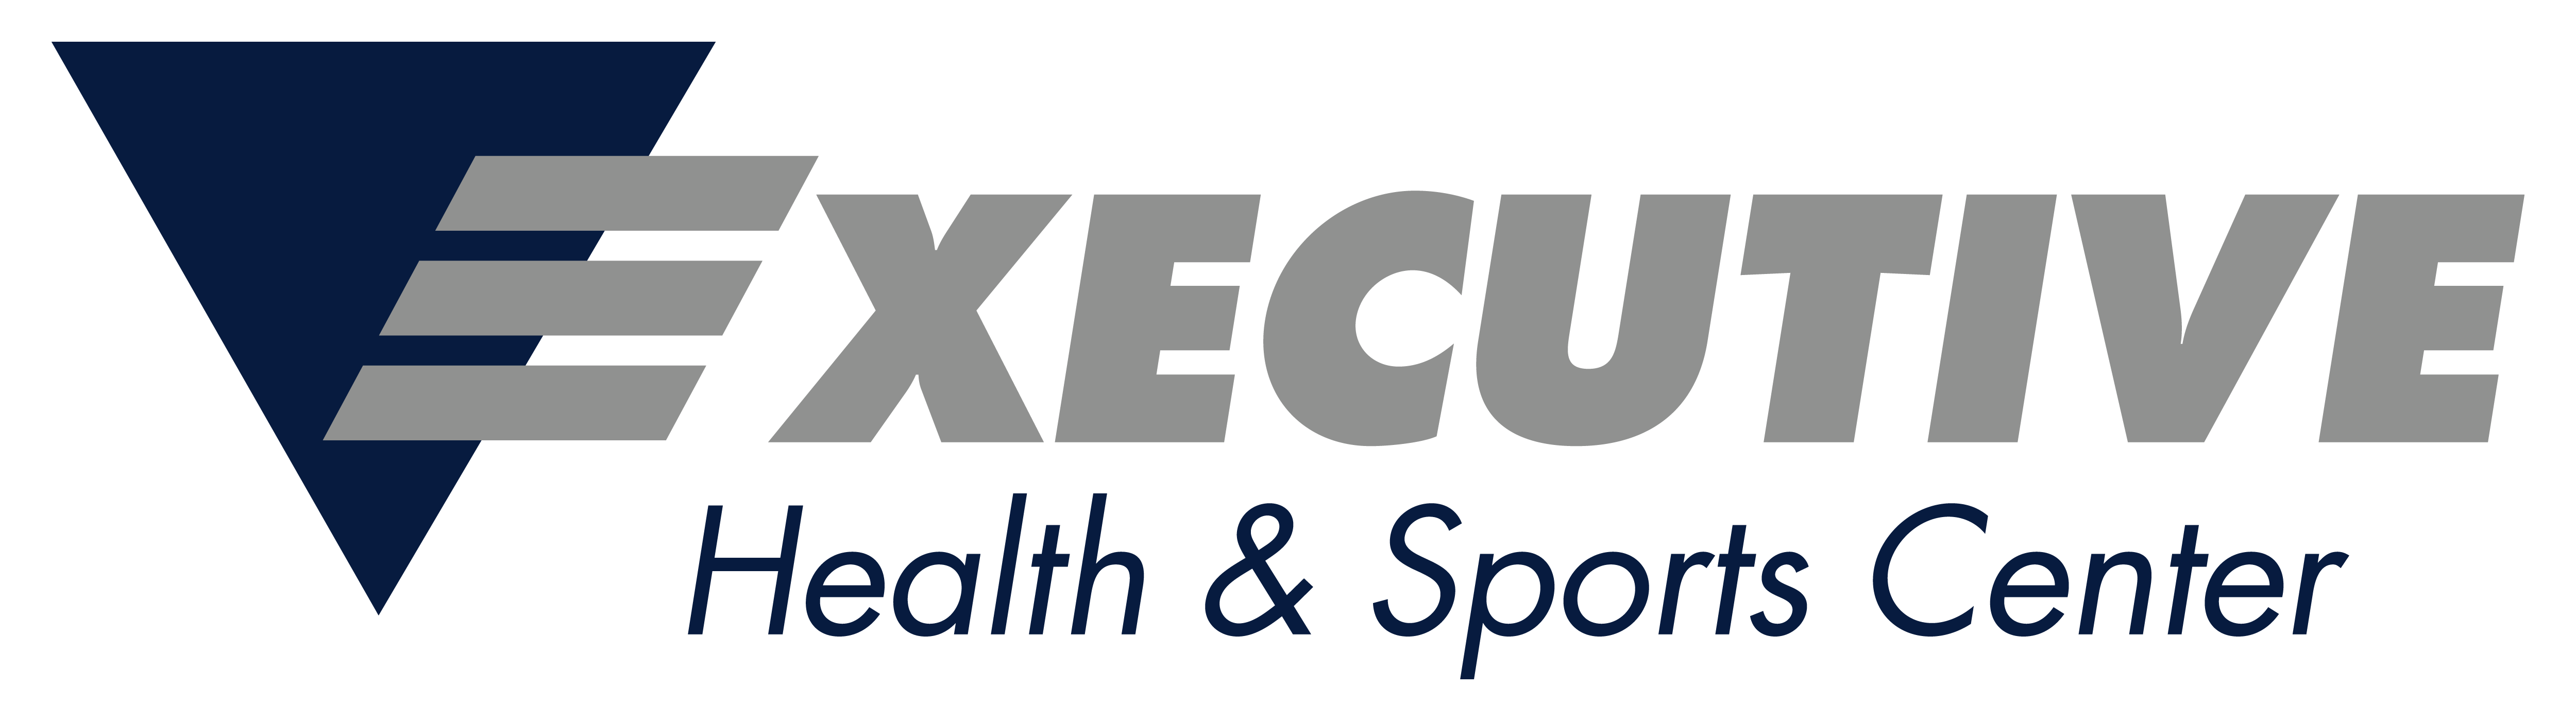 Executive Health & Sports Center logo